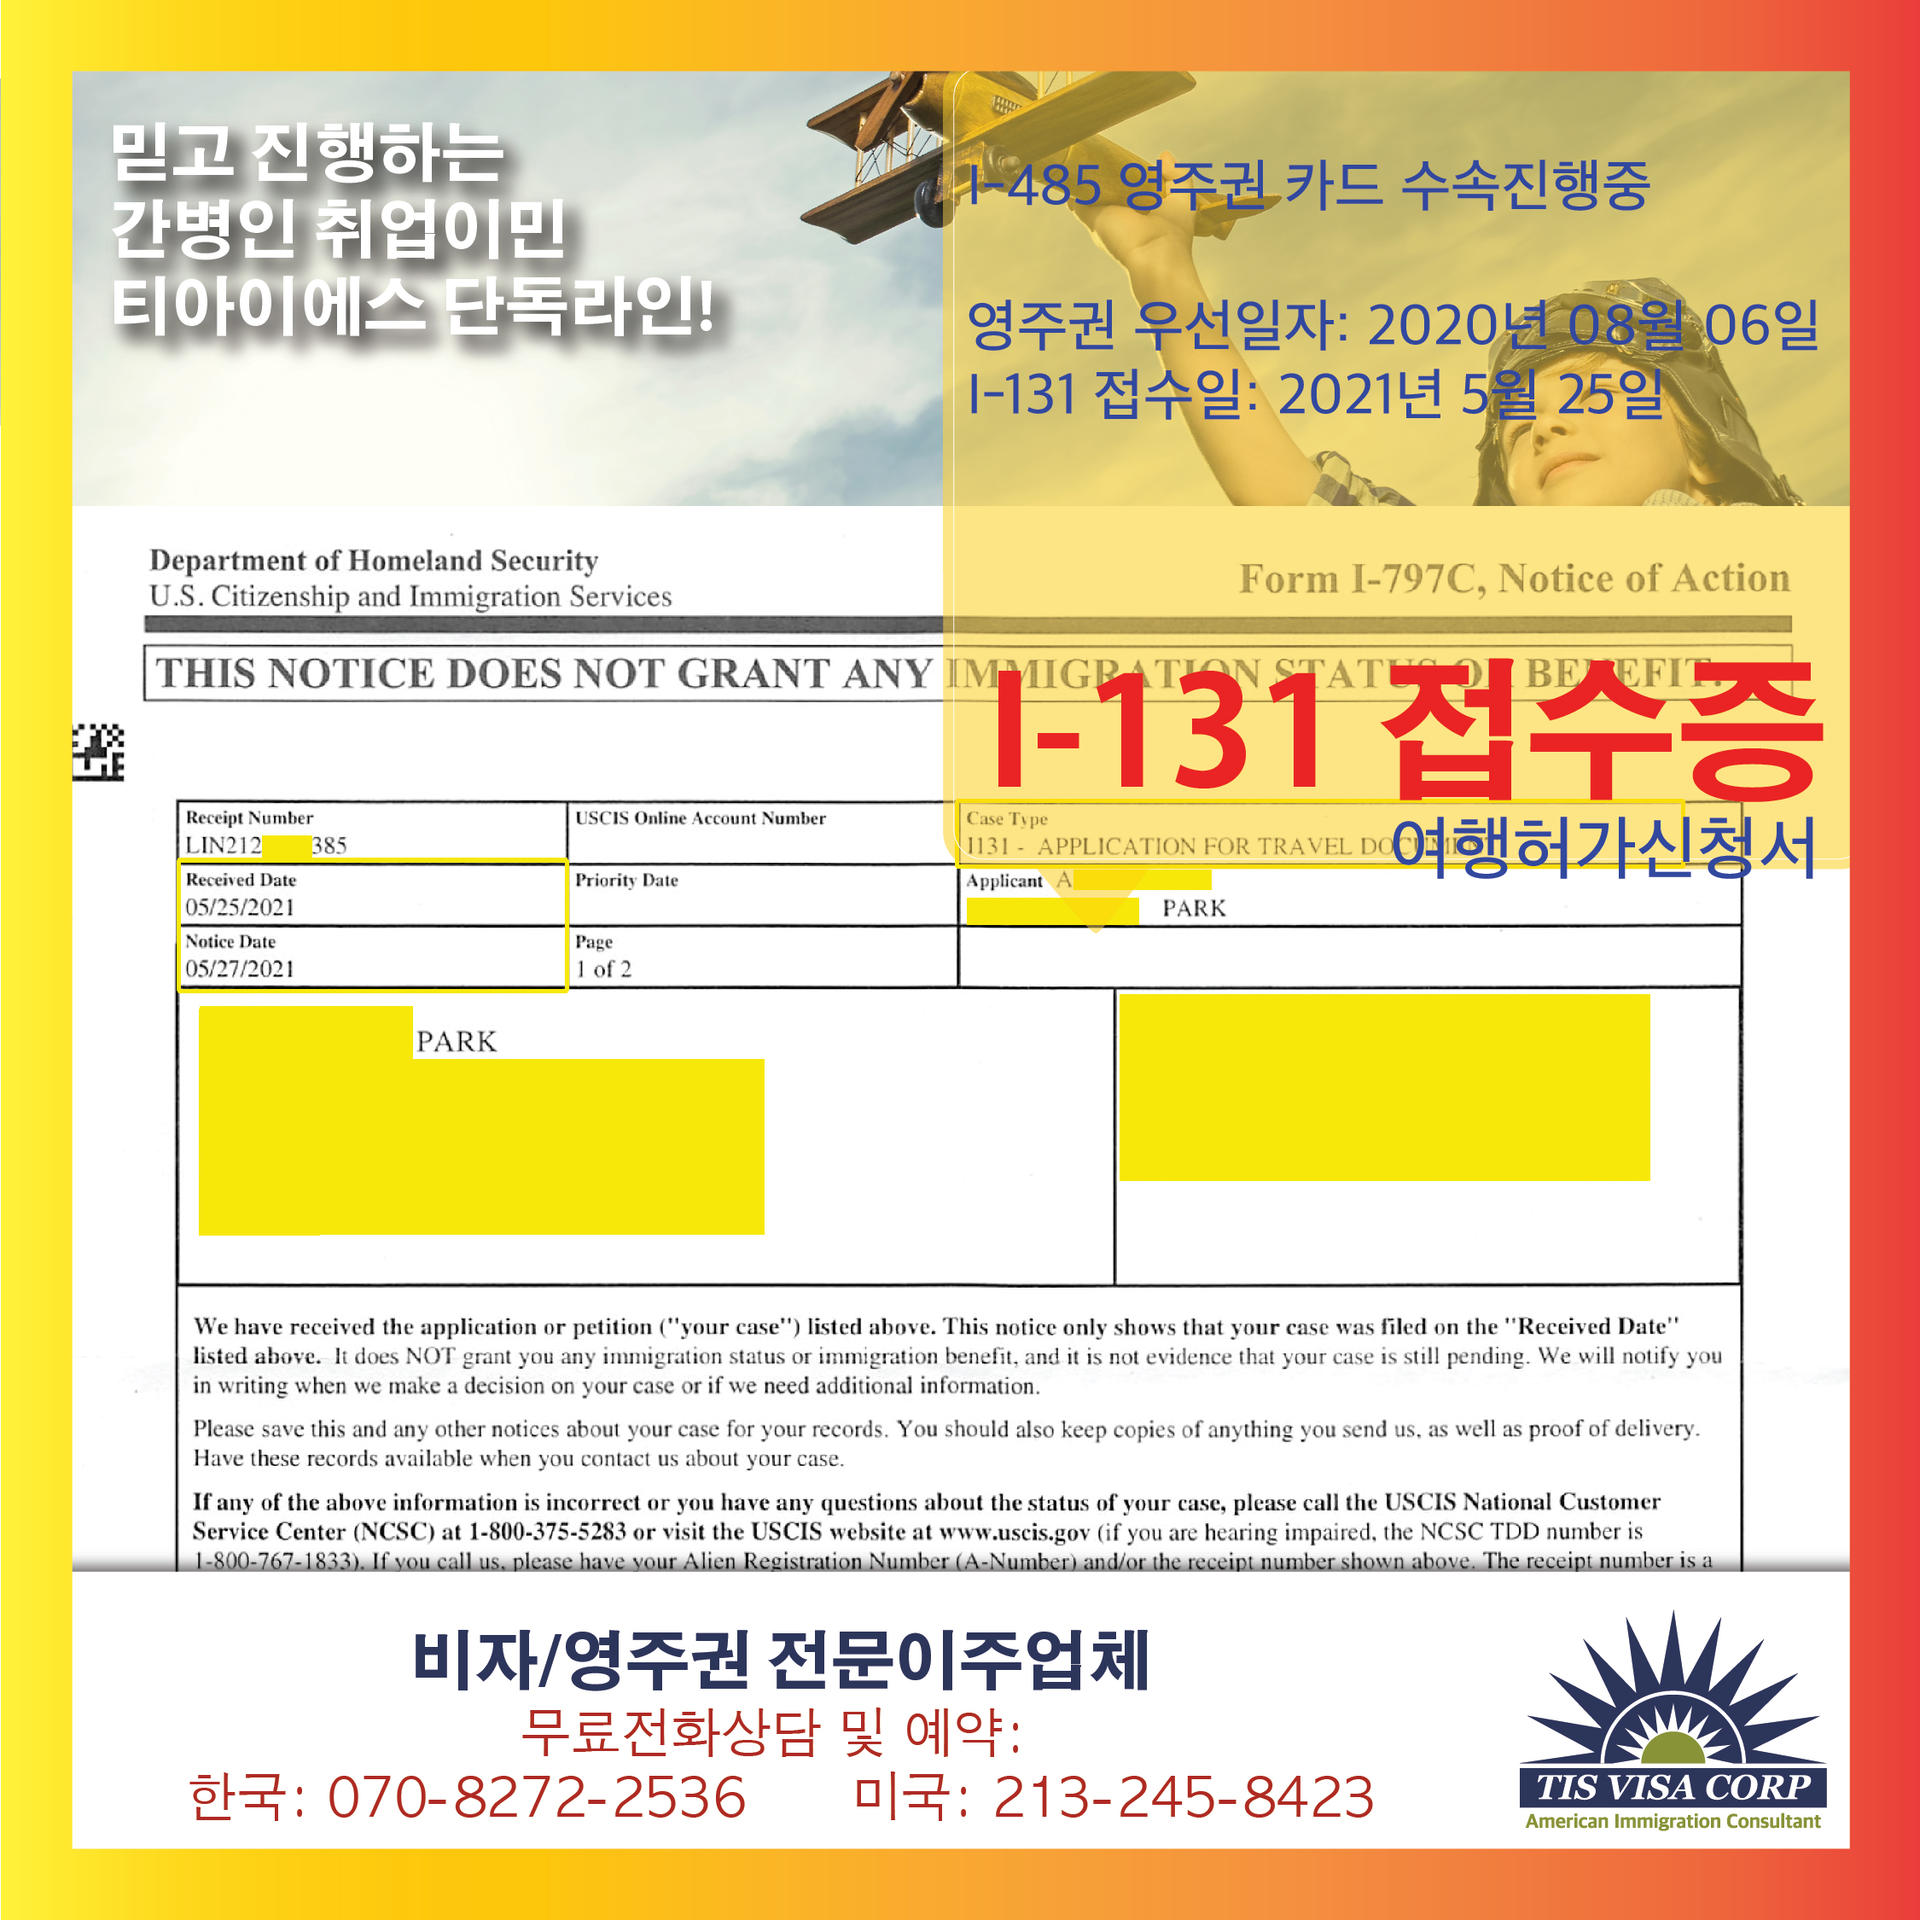 간병인취업이민] 영주권(I-485) 접수 : 티아이에스